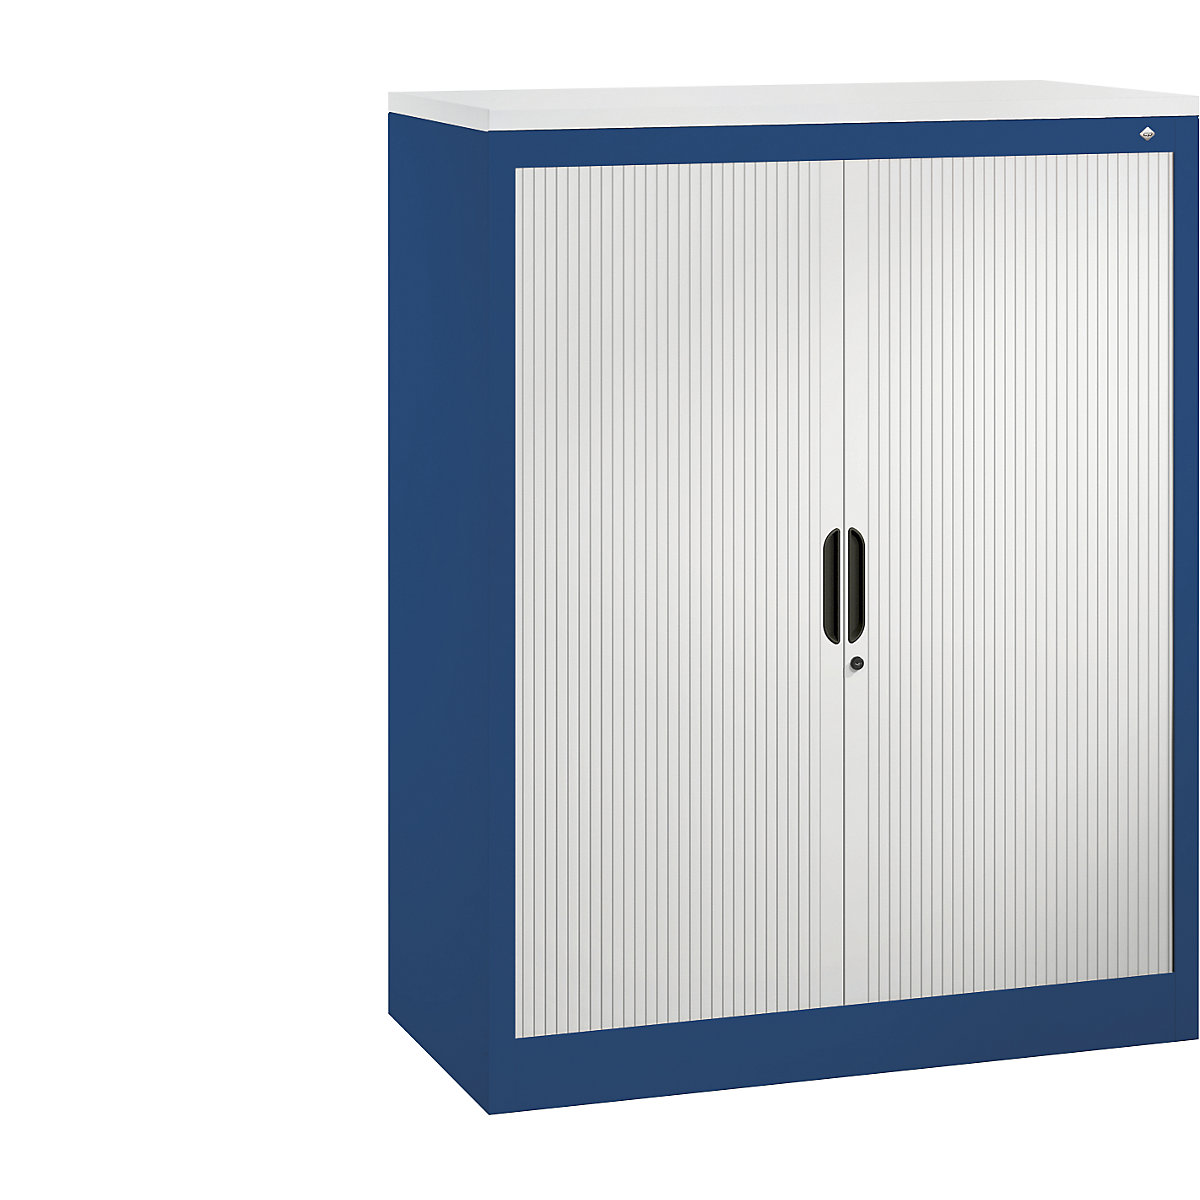 Roller shutter cupboard with horizontal shutter – C+P, HxWxD 1230 x 1000 x 420 mm, 2 shelves, 3 file heights, gentian blue / light grey-3